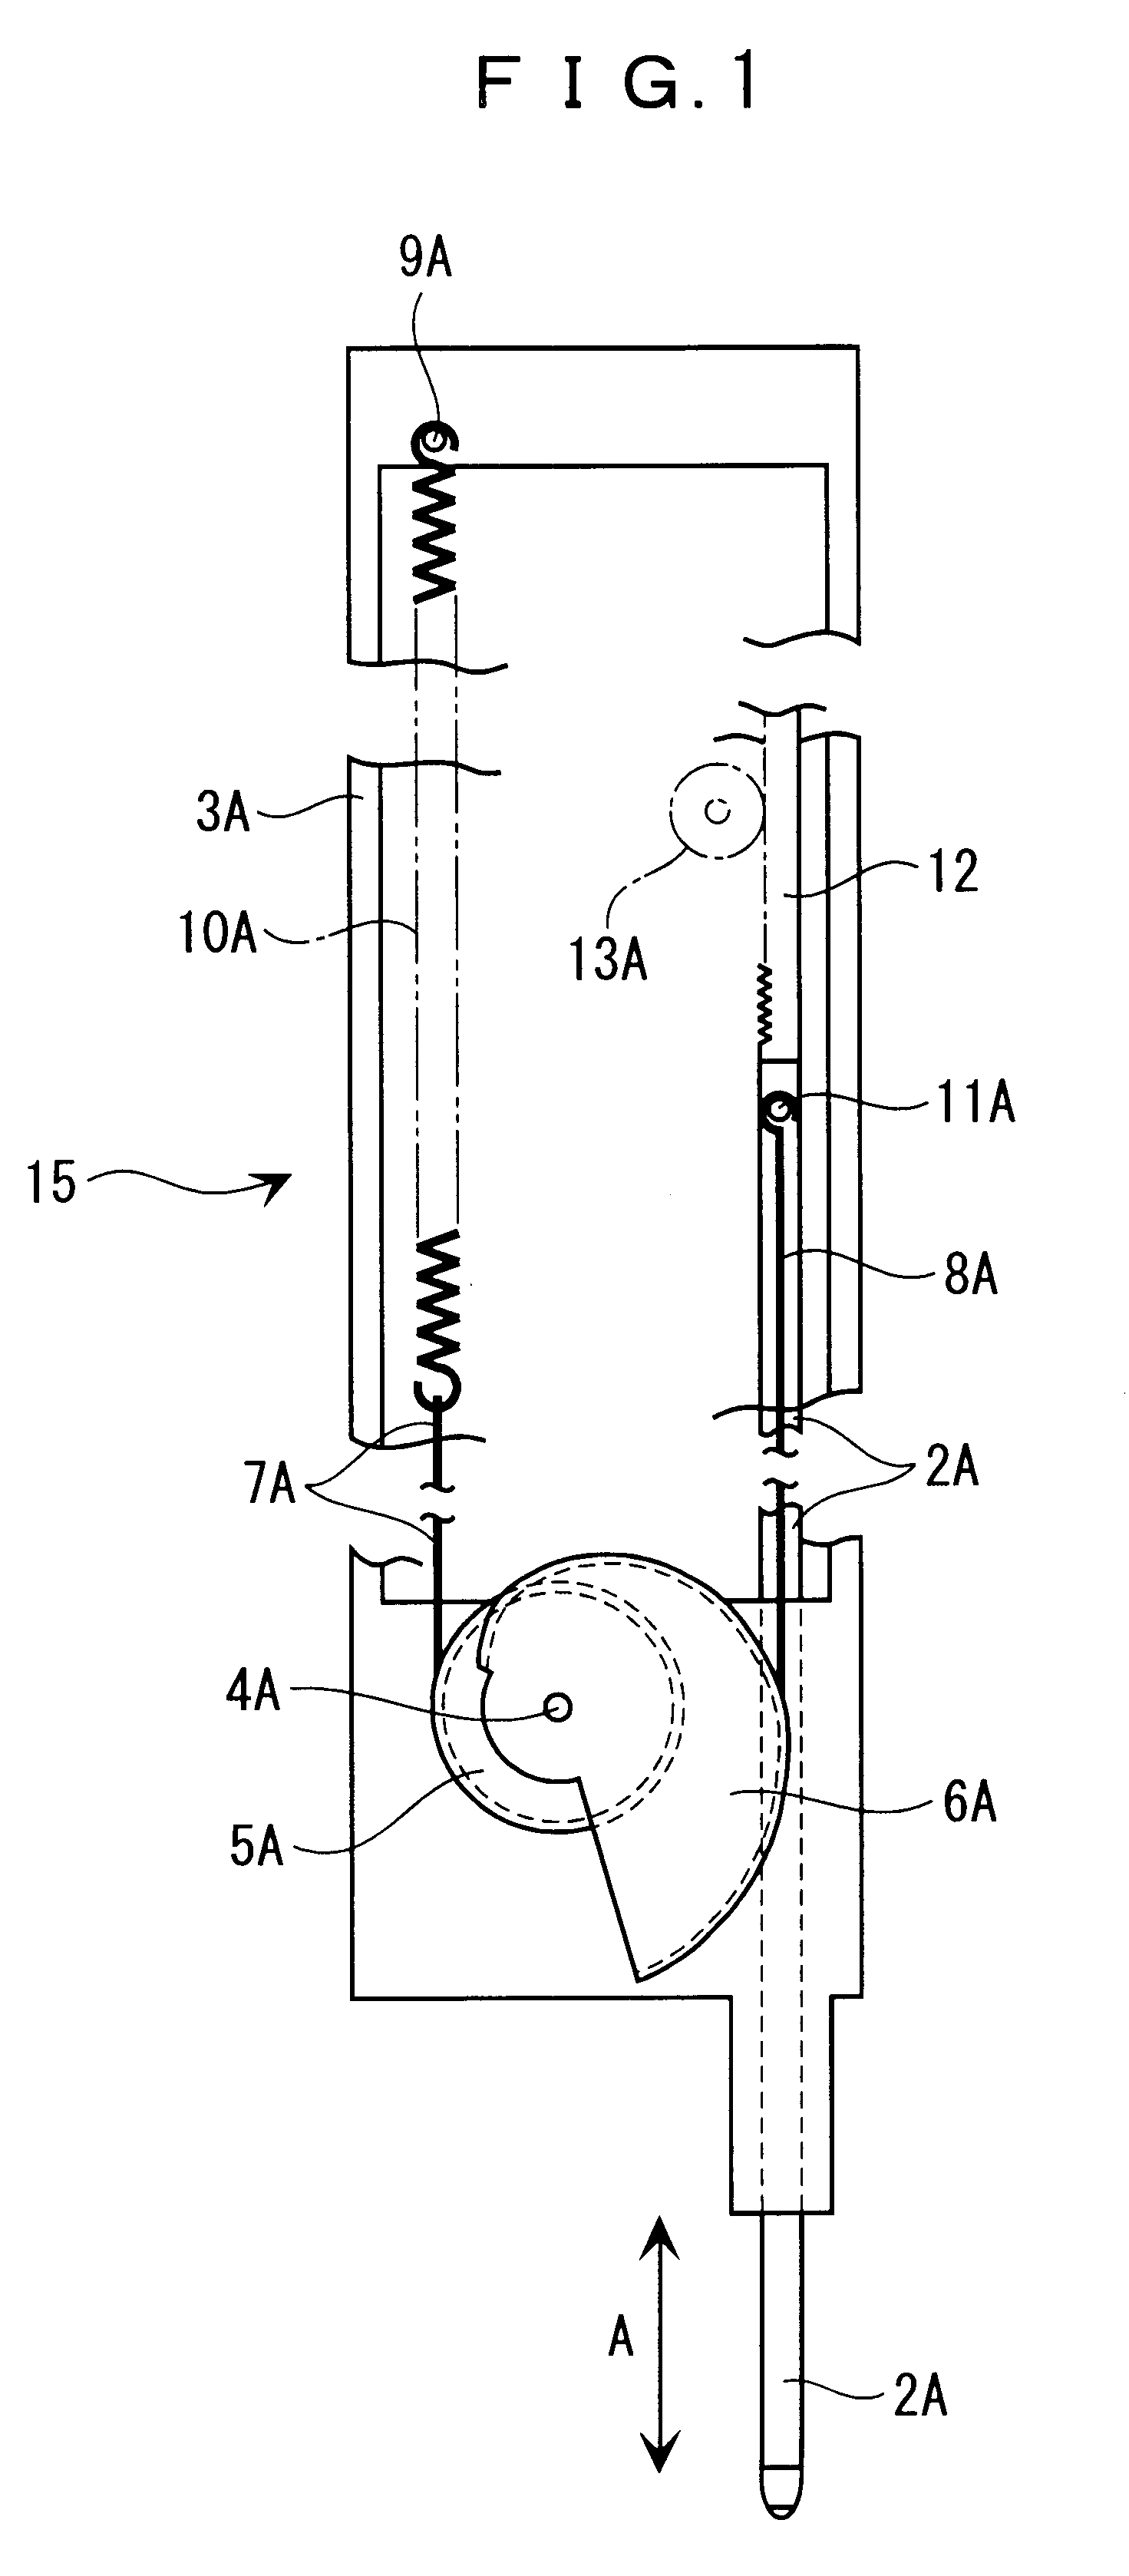 Constant pressure mechanism of probe